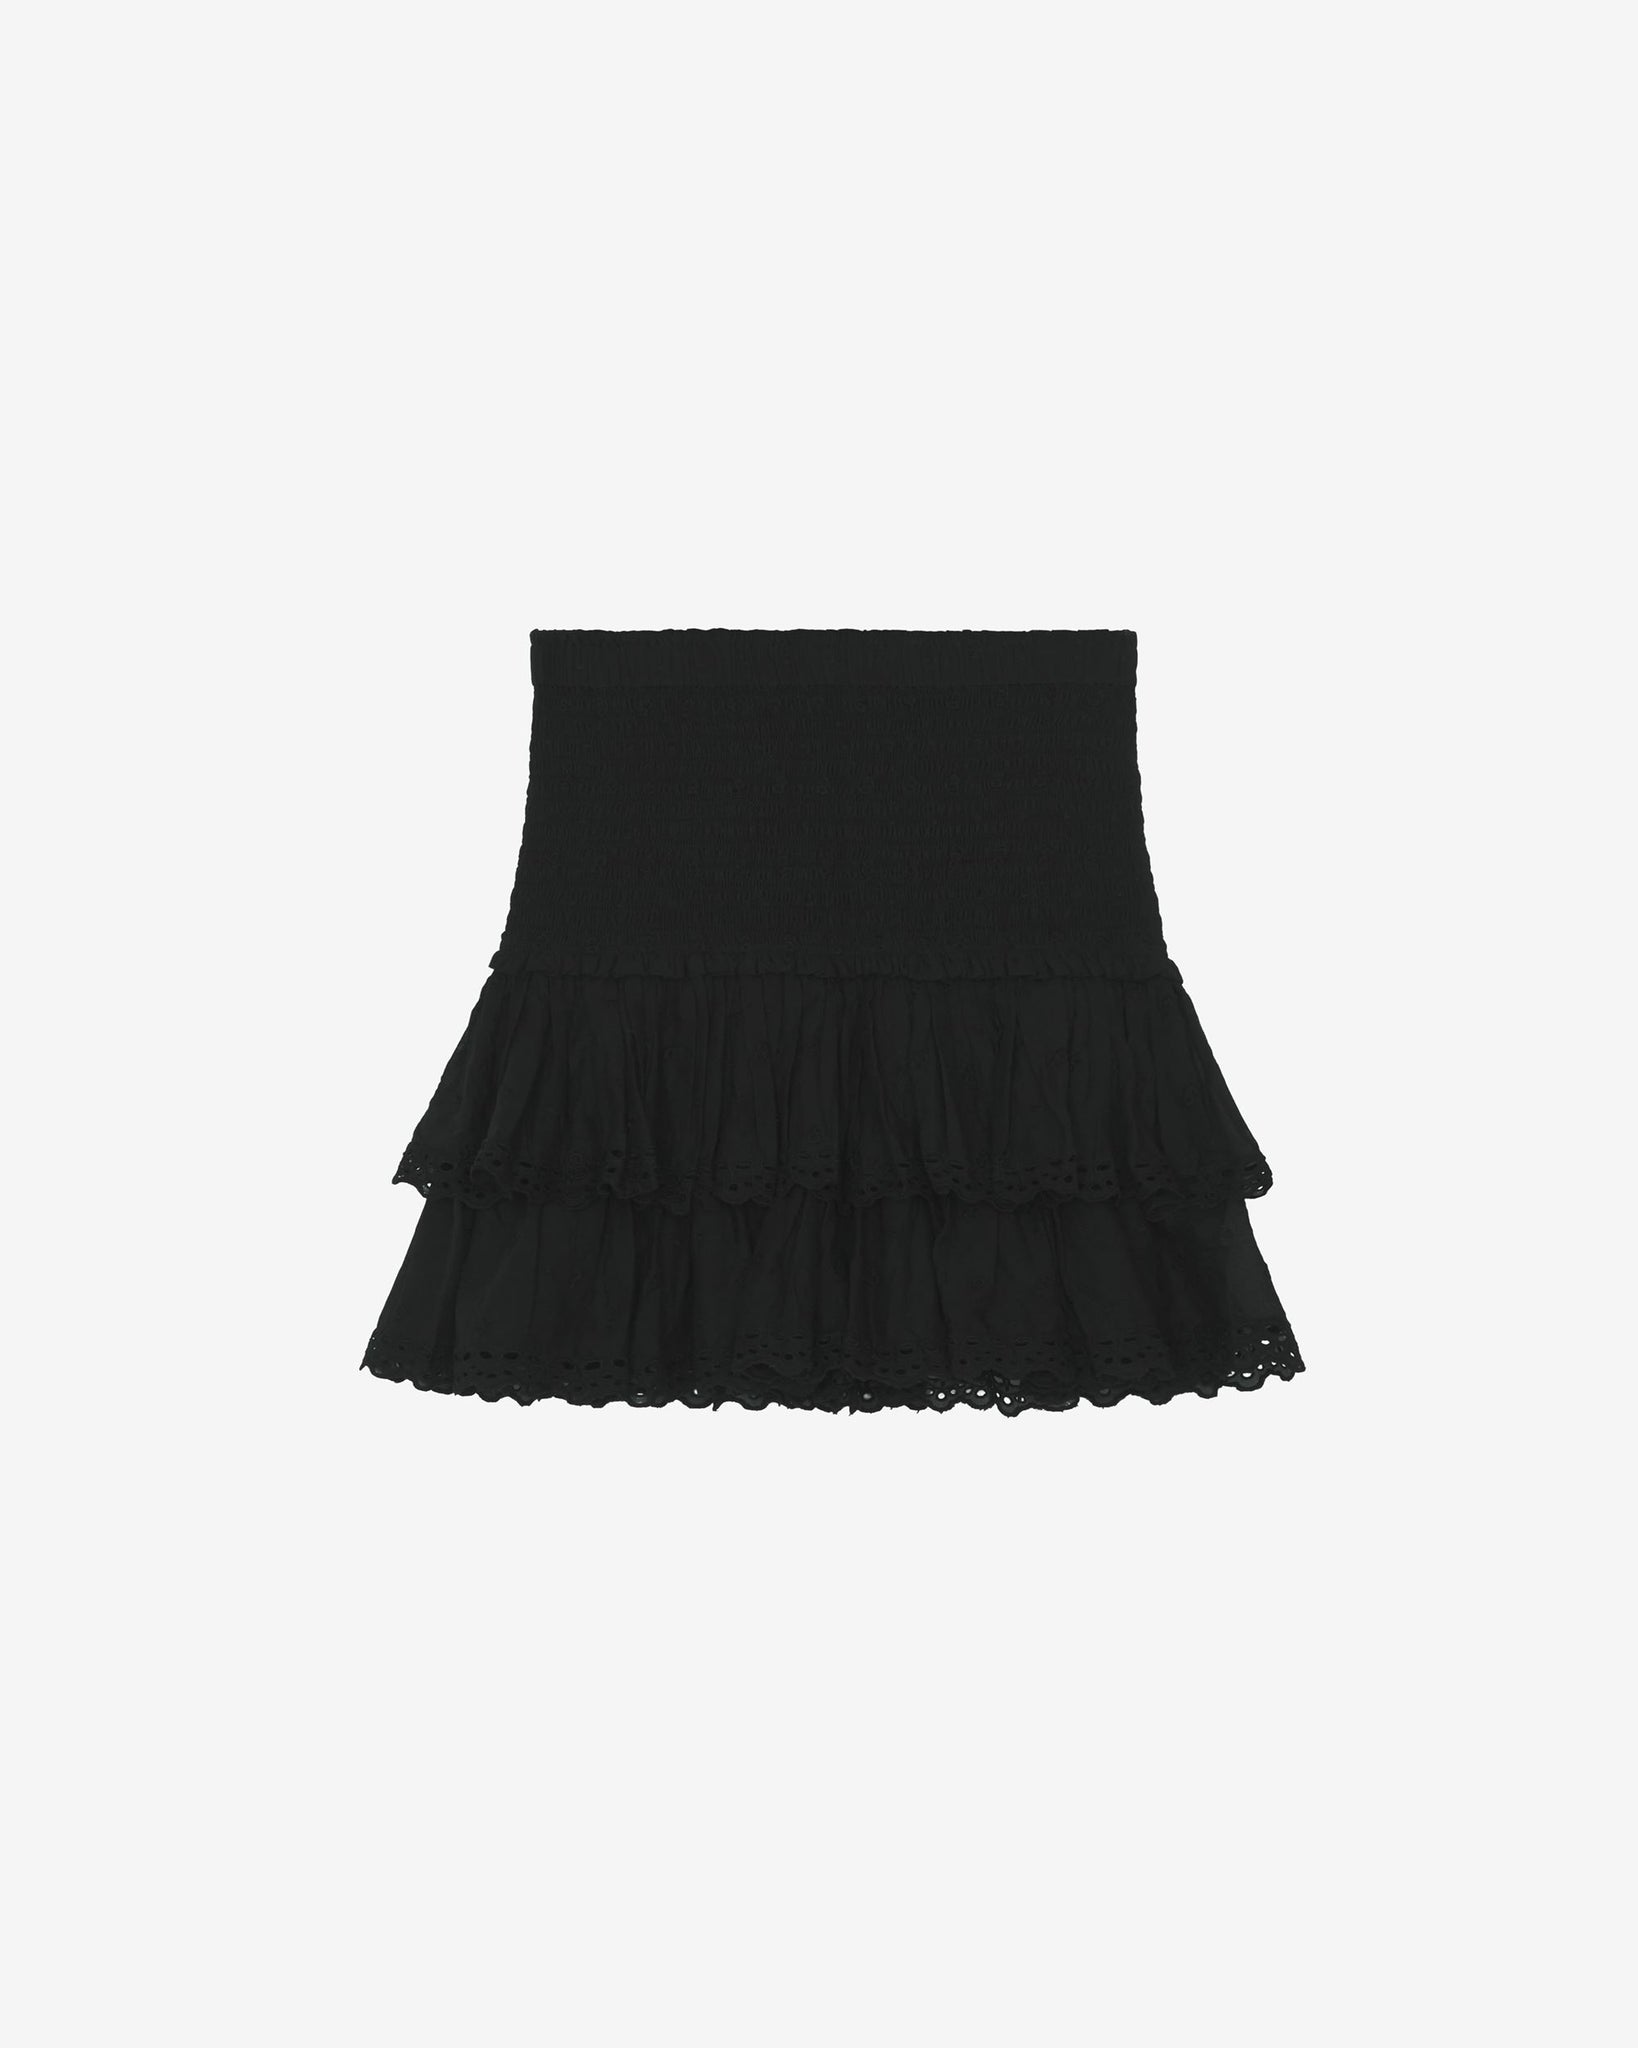 Tinaomi skirt, black